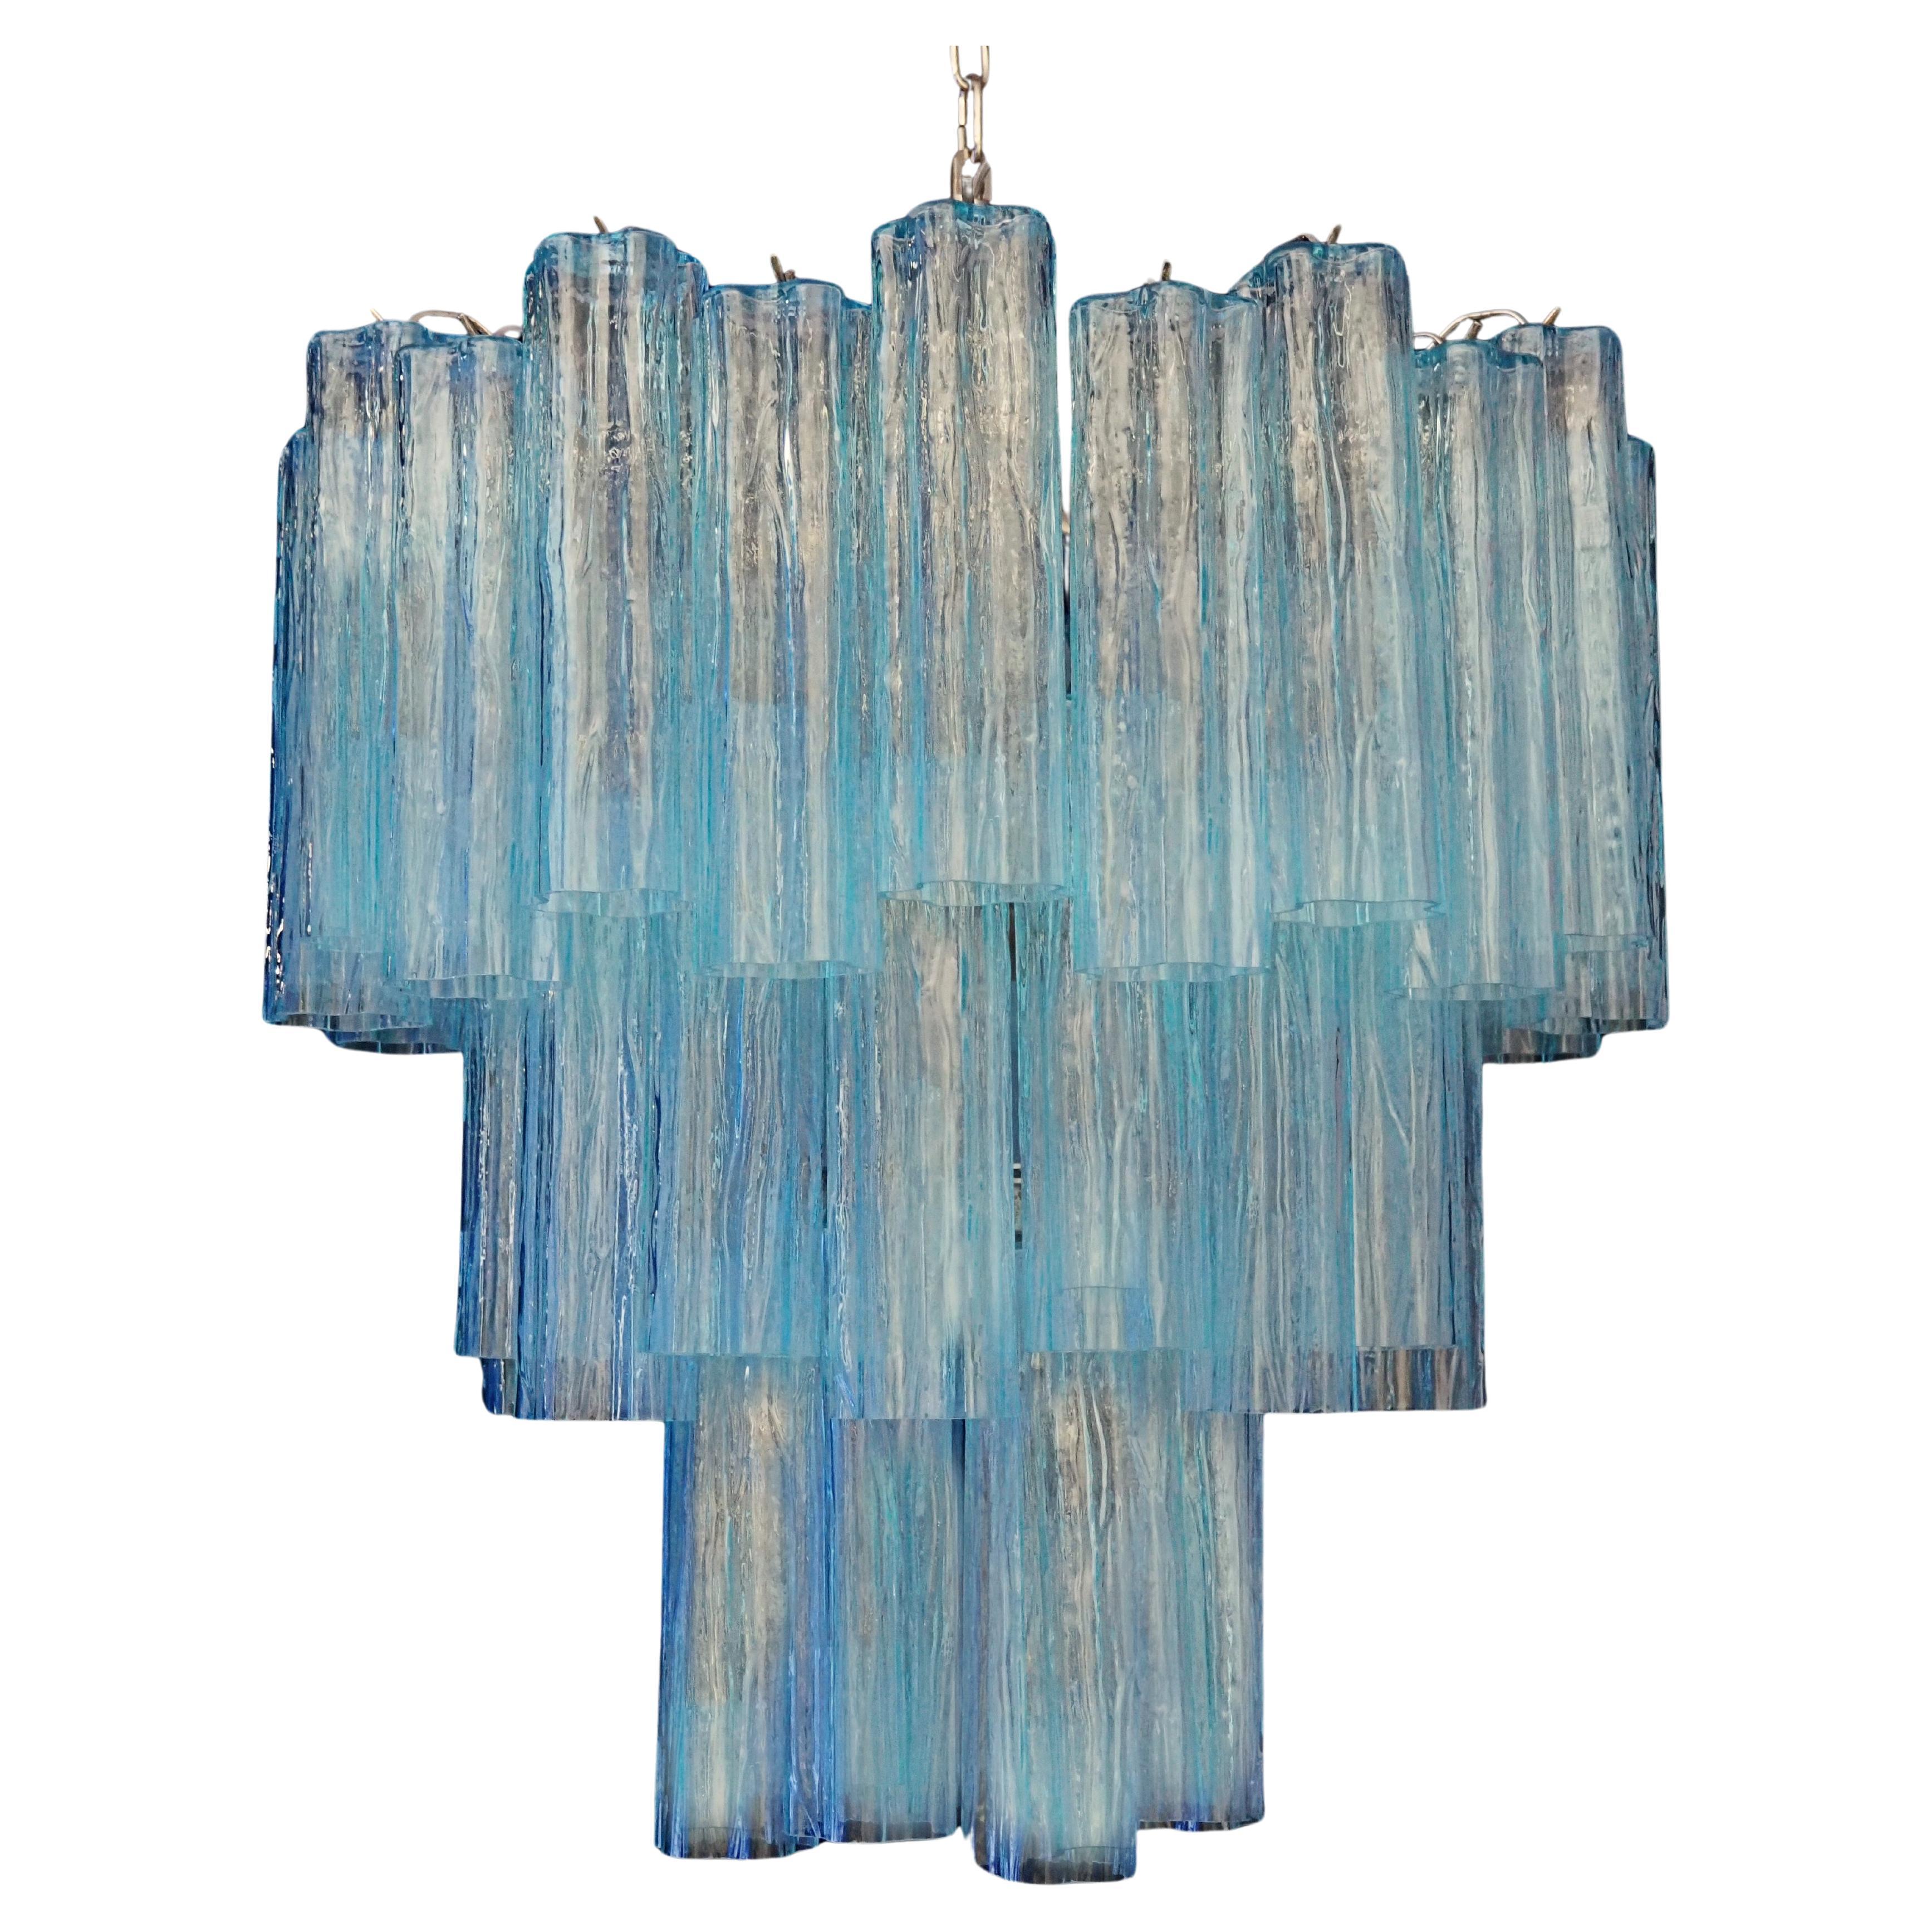 Erstaunlicher dreistufiger Kronleuchter aus Murano-Glas - 48 BLAUE GLÄSER 